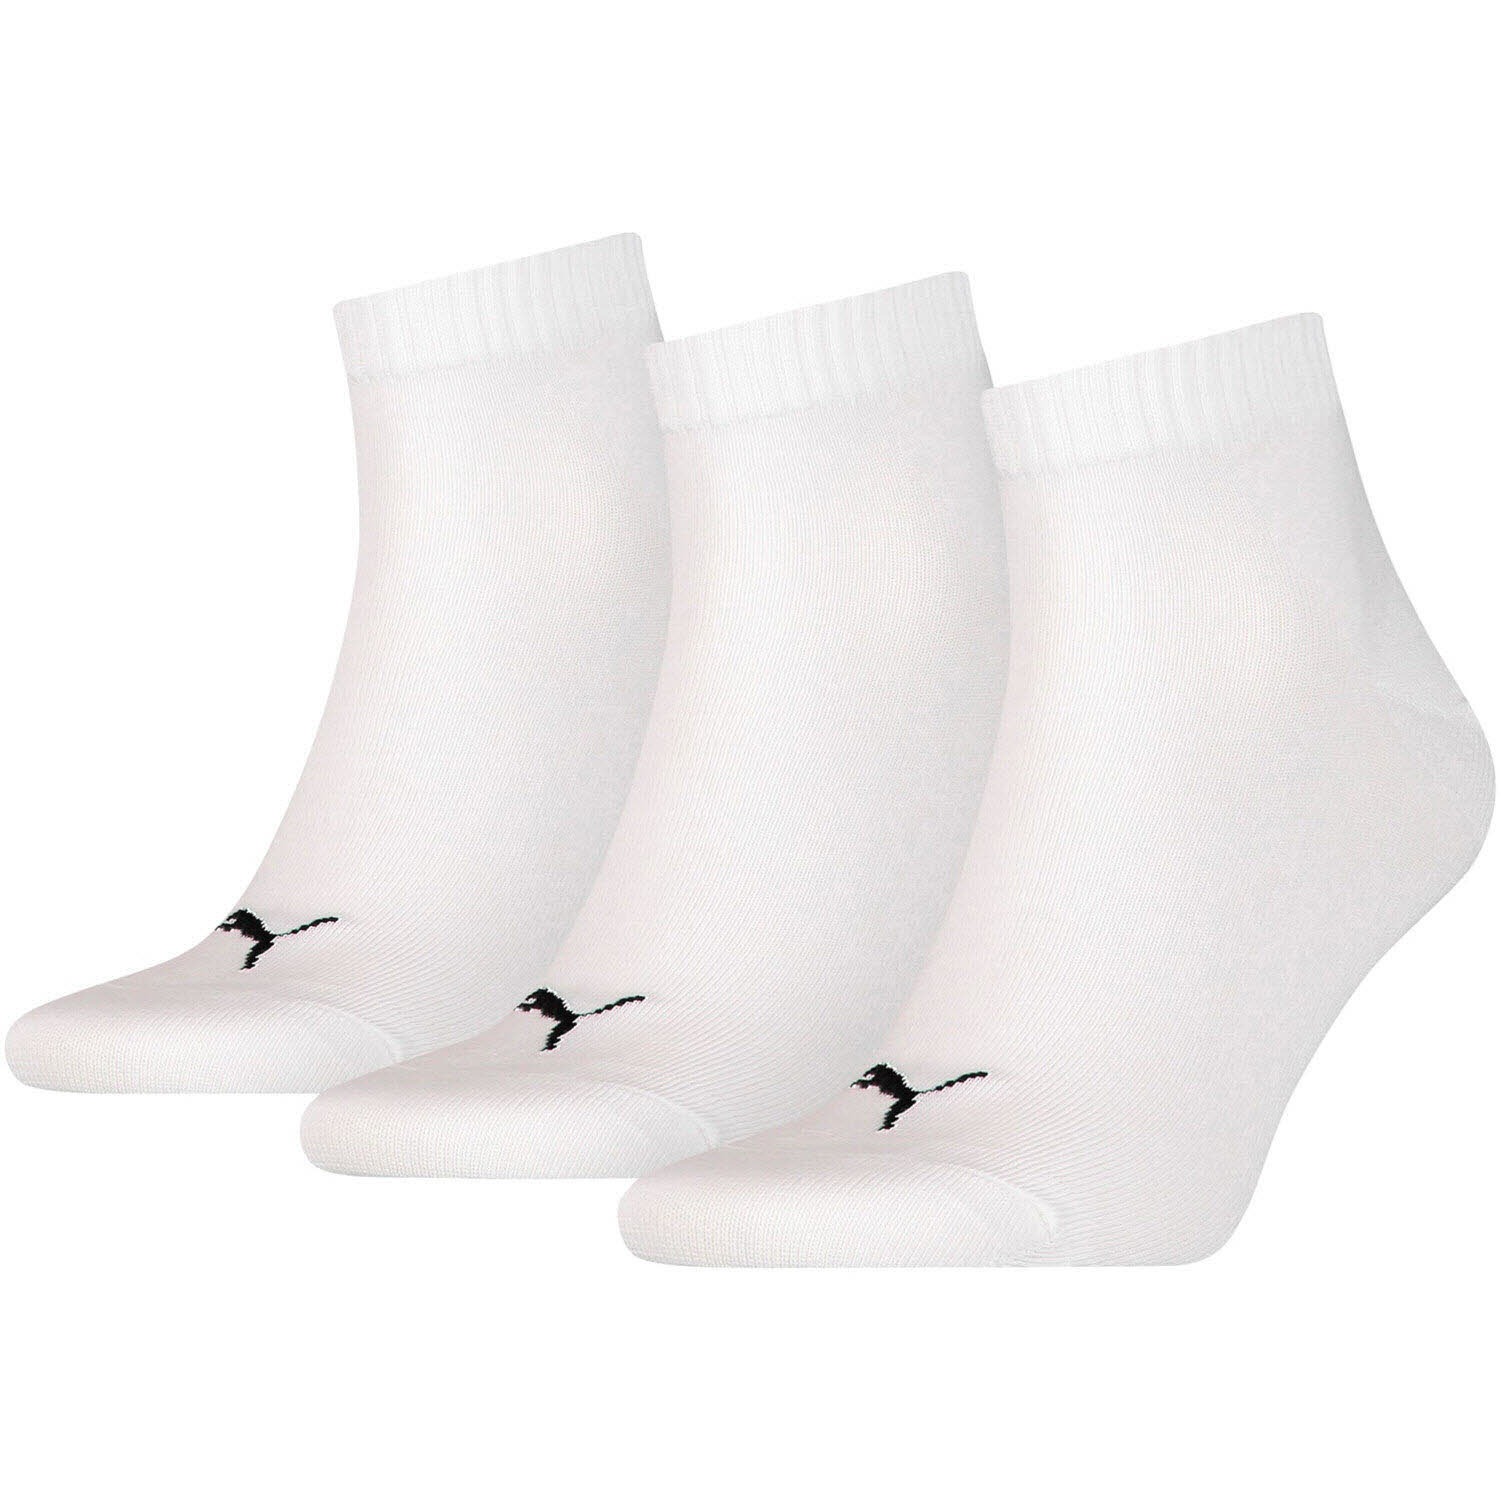 Unisex Socken von Puma auch in Weiß erhältlich